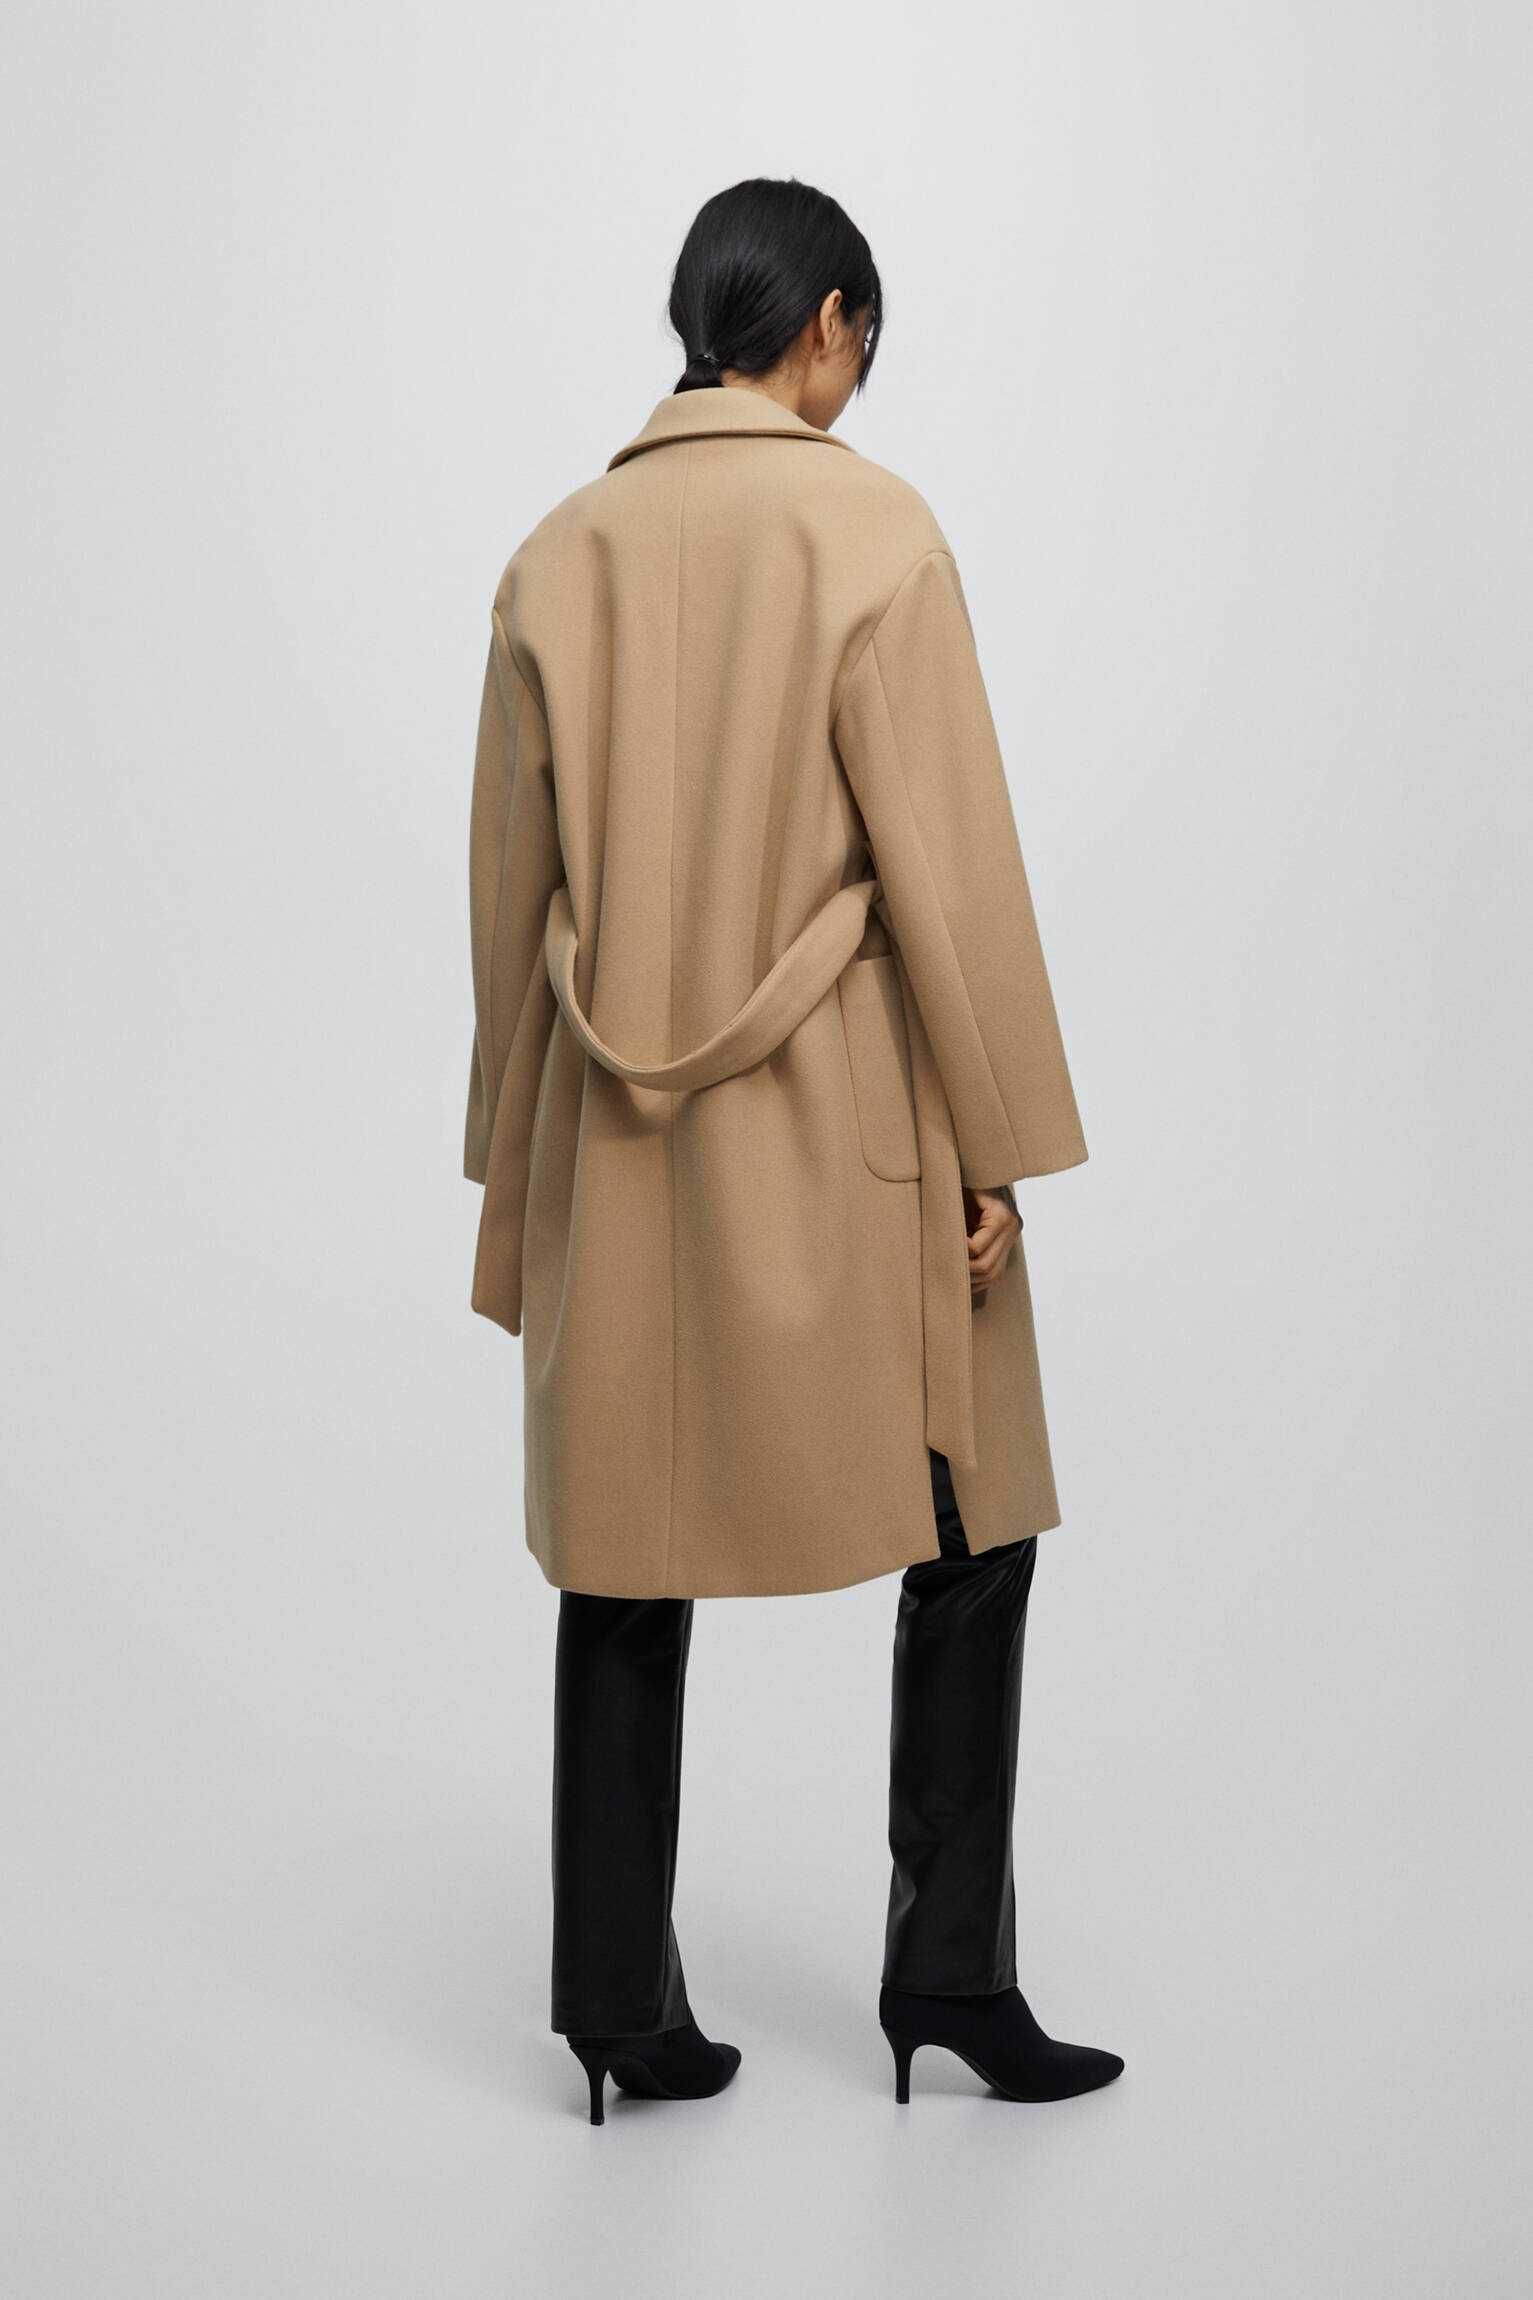 /последно намаление/ Дамско палто Pull&Bear, размер L, ново с етикет